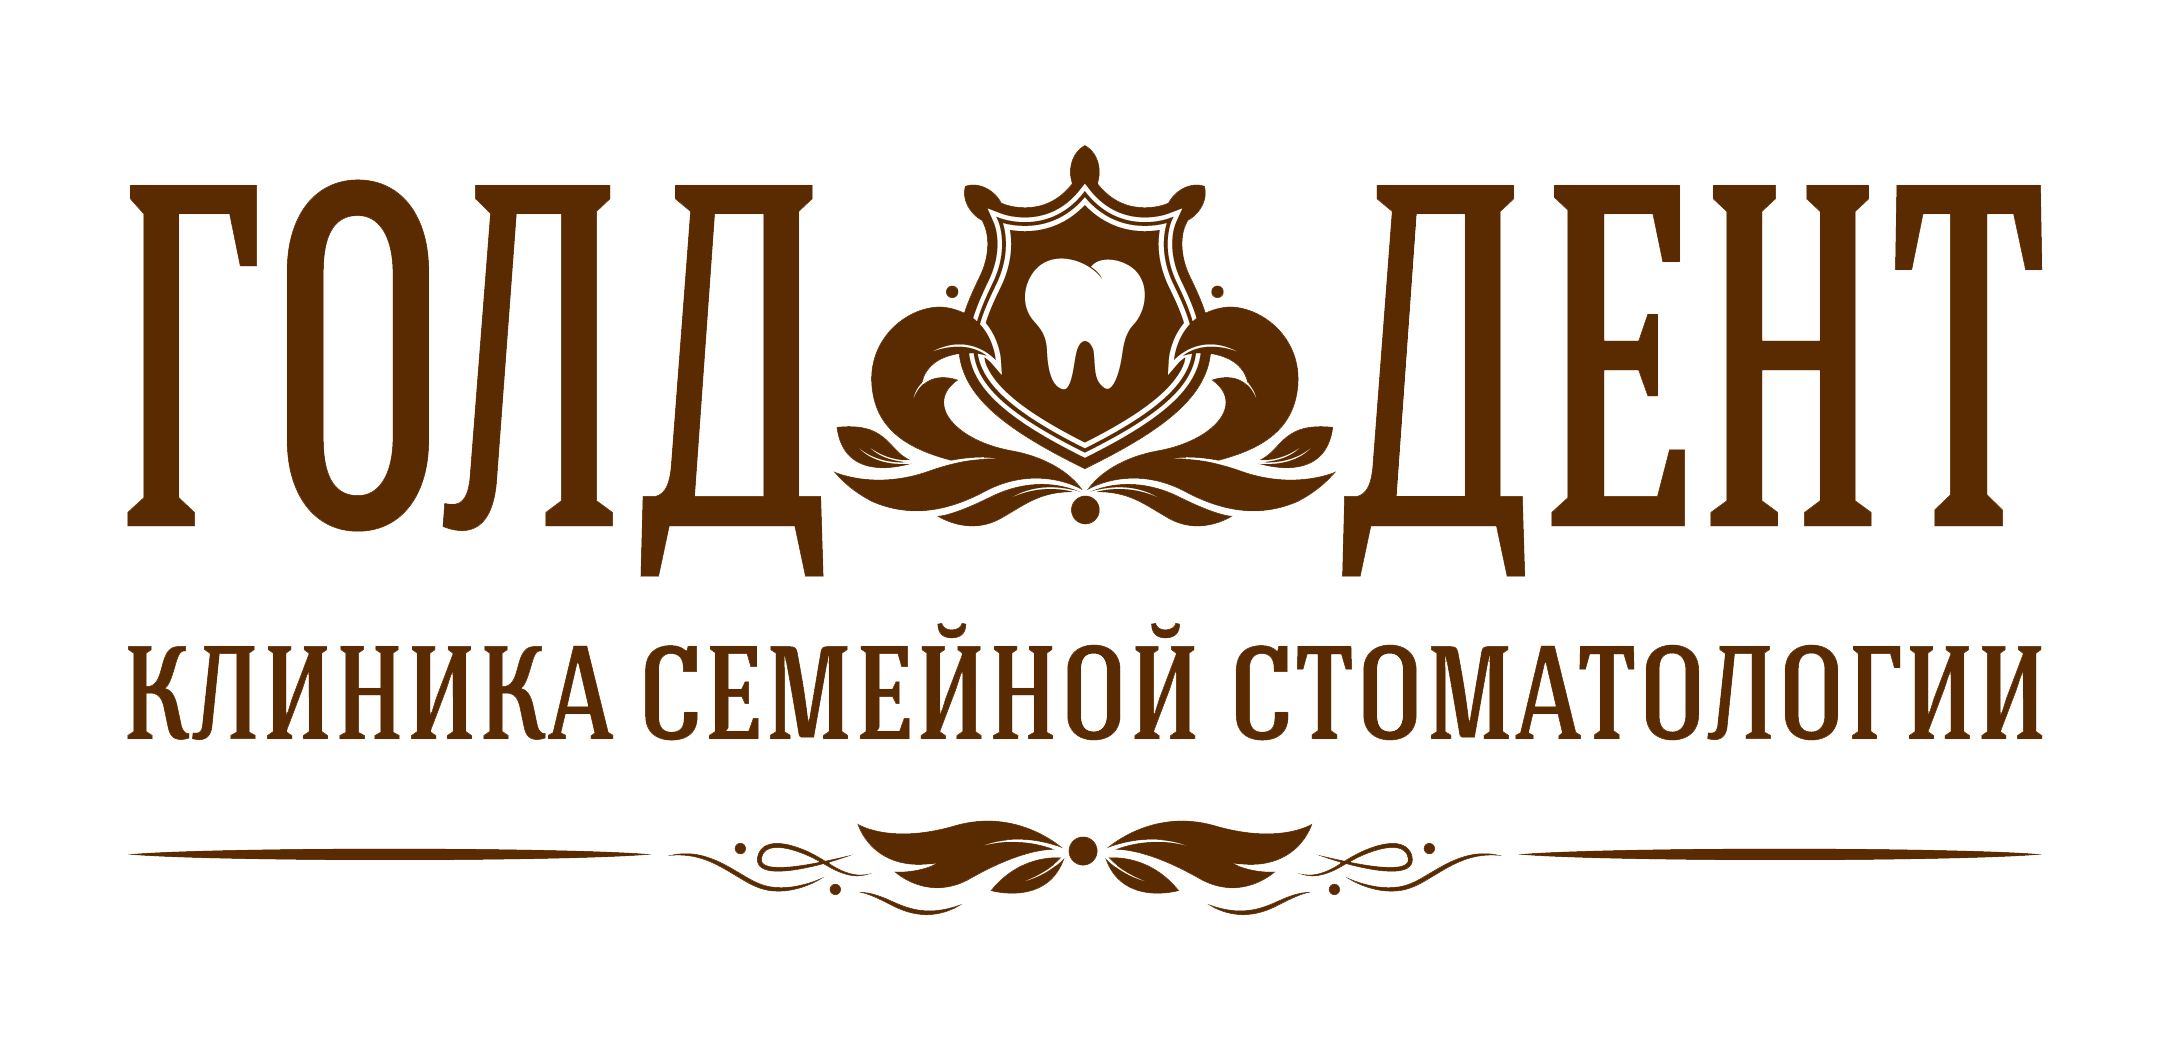 Логотип ООО "Голд дент"